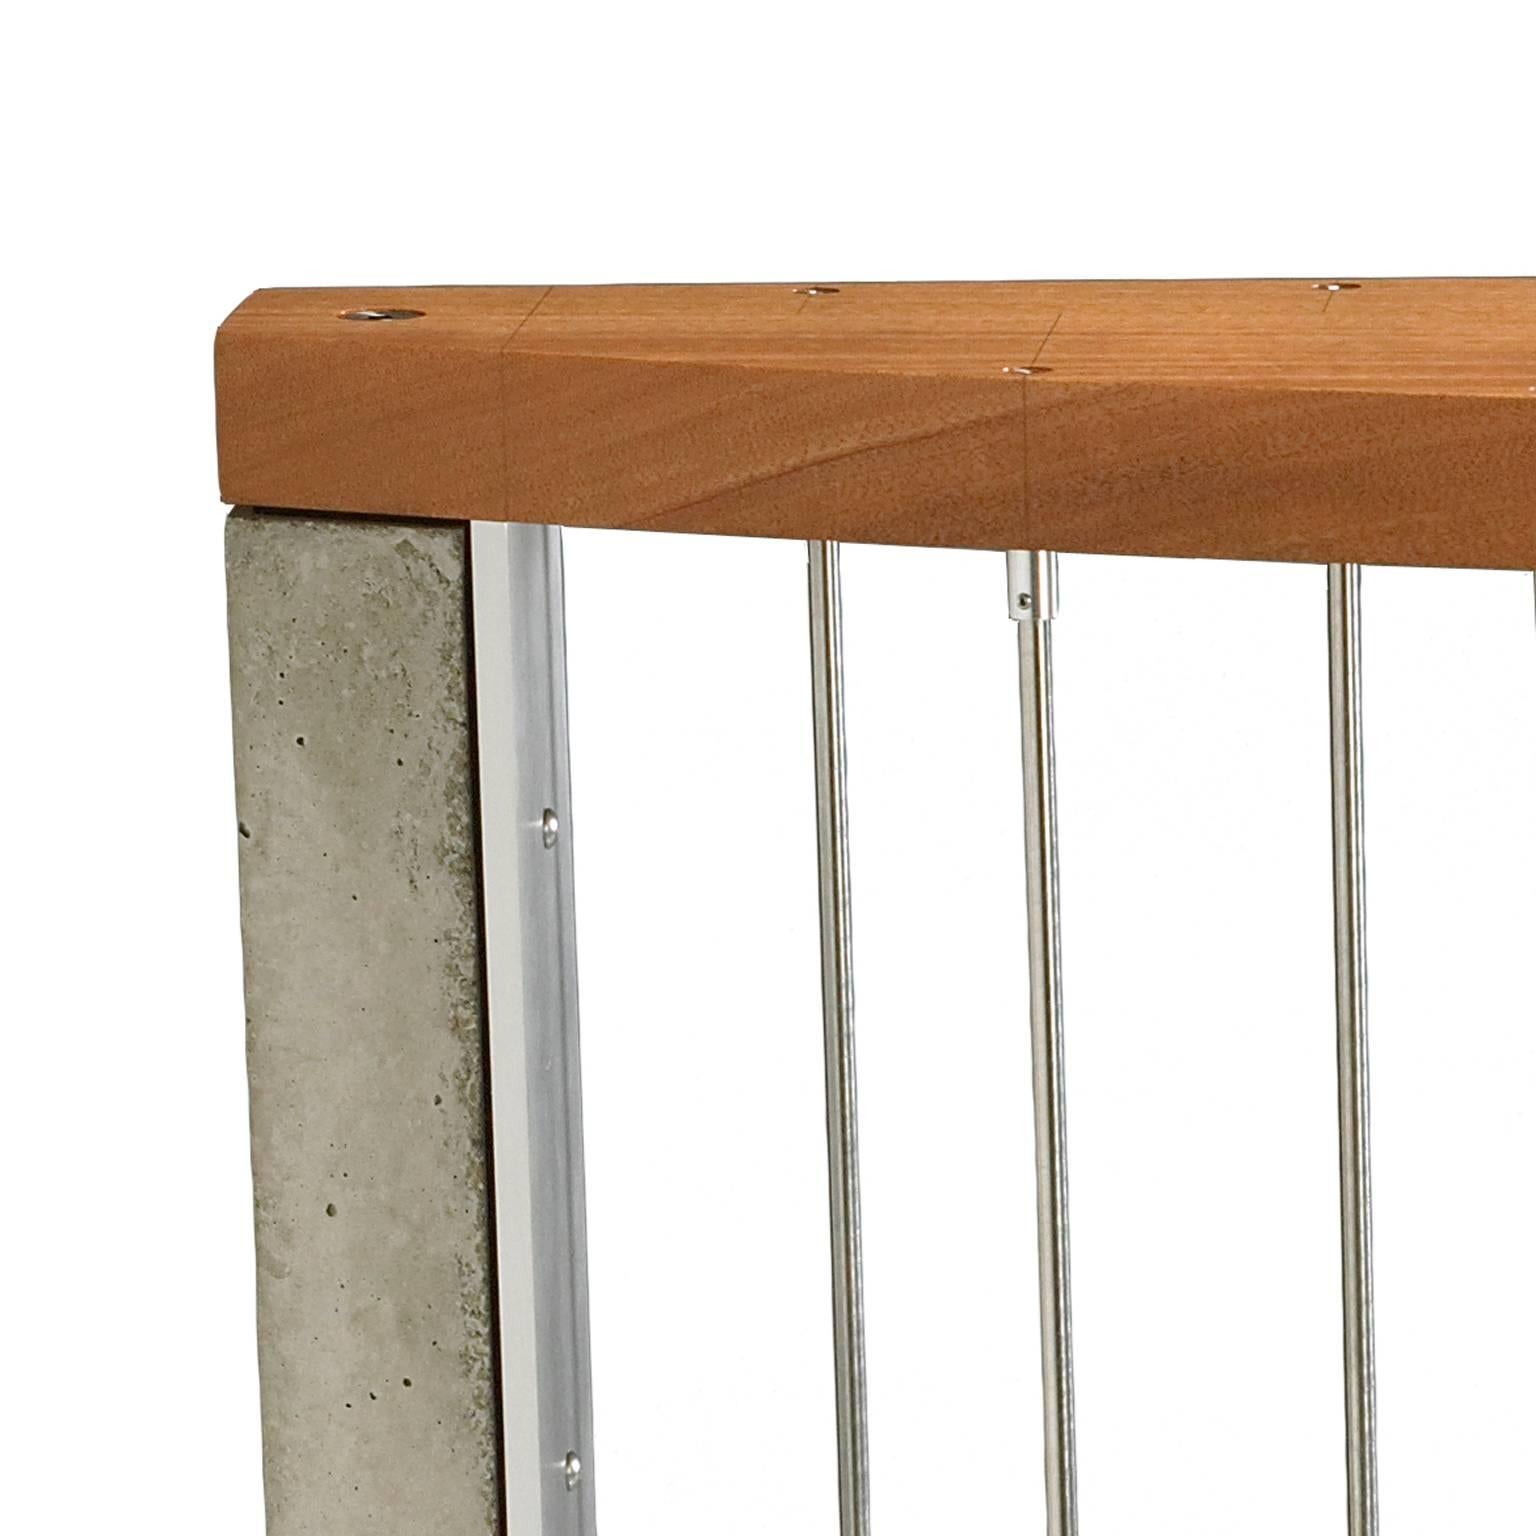 La table Callisto allie harmonieusement béton, acier inoxydable, aluminium et acajou. Les tiges verticales en acier inoxydable vibrent visuellement en créant une illusion de mouvement. Les extrémités sont un pilier de béton non traditionnel. Avec